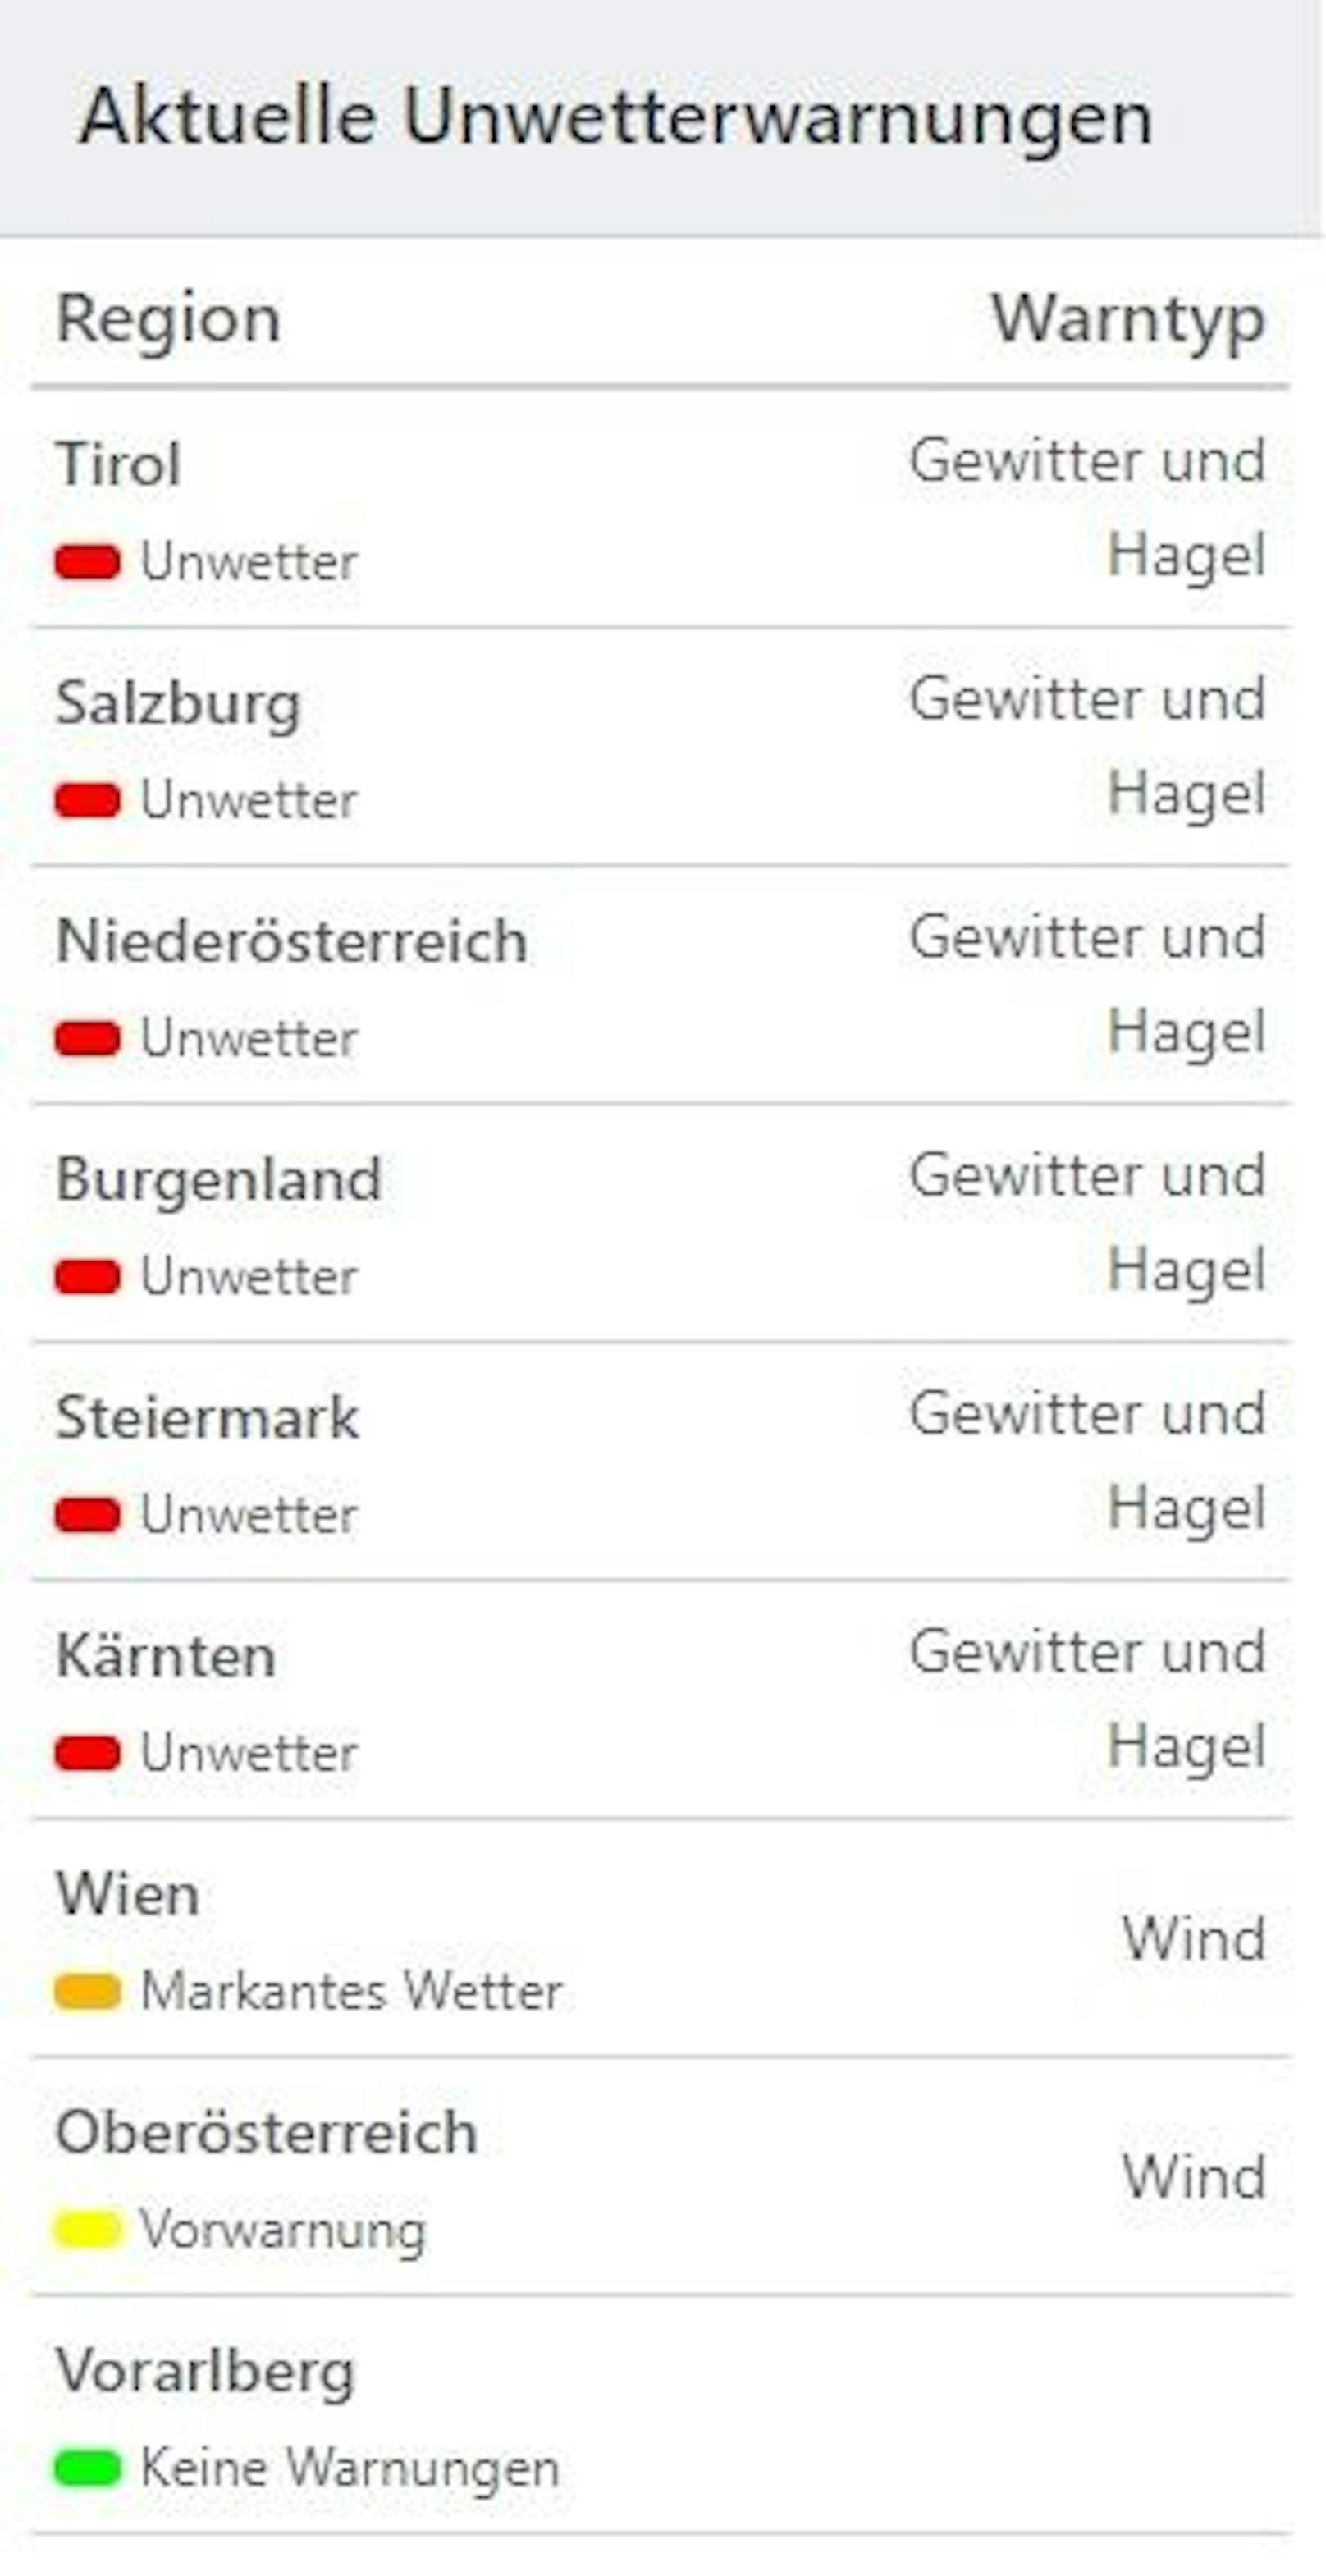 Nur in Vorarlberg herrscht aktuell keine Unwetter-Warnung.